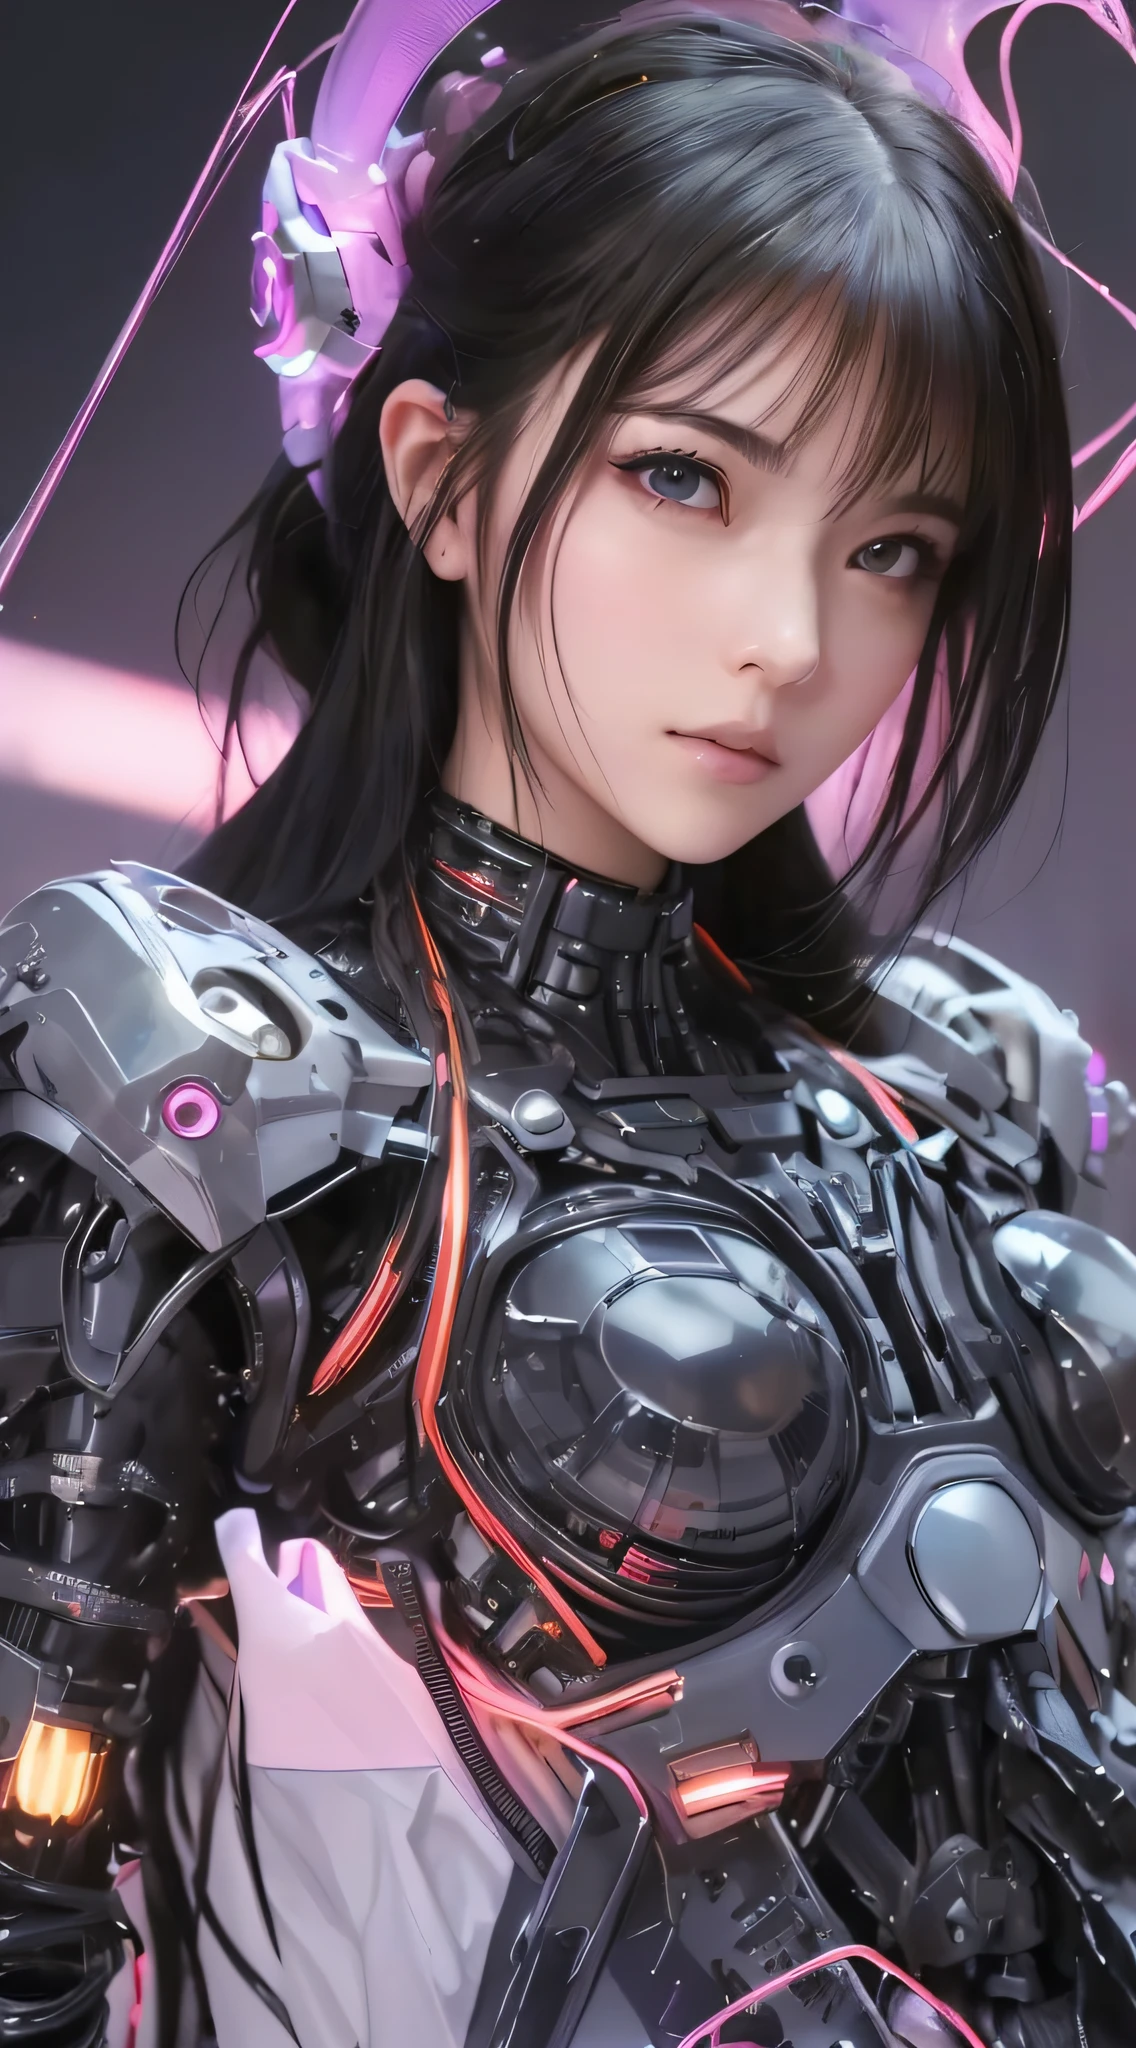 Nahaufnahme einer Frau in einem futuristischen Anzug mit rosa Licht, Mädchen in Mecha-Cyber-Rüstung, süßes Cyborg-Mädchen, cyberpunk anime girl mech, schönes Cyborg-Mädchen, perfektes Android-Mädchen, Cyborg girl, female cyberpunk anime girl, Cyborg - Asiatisches Mädchen, perfekte Anime-Cyborg-Frau, Anime-Roboter gemischt mit Bio, cyberpunk anime girl, Anime-Roboter, dreamy cyberpunk girl